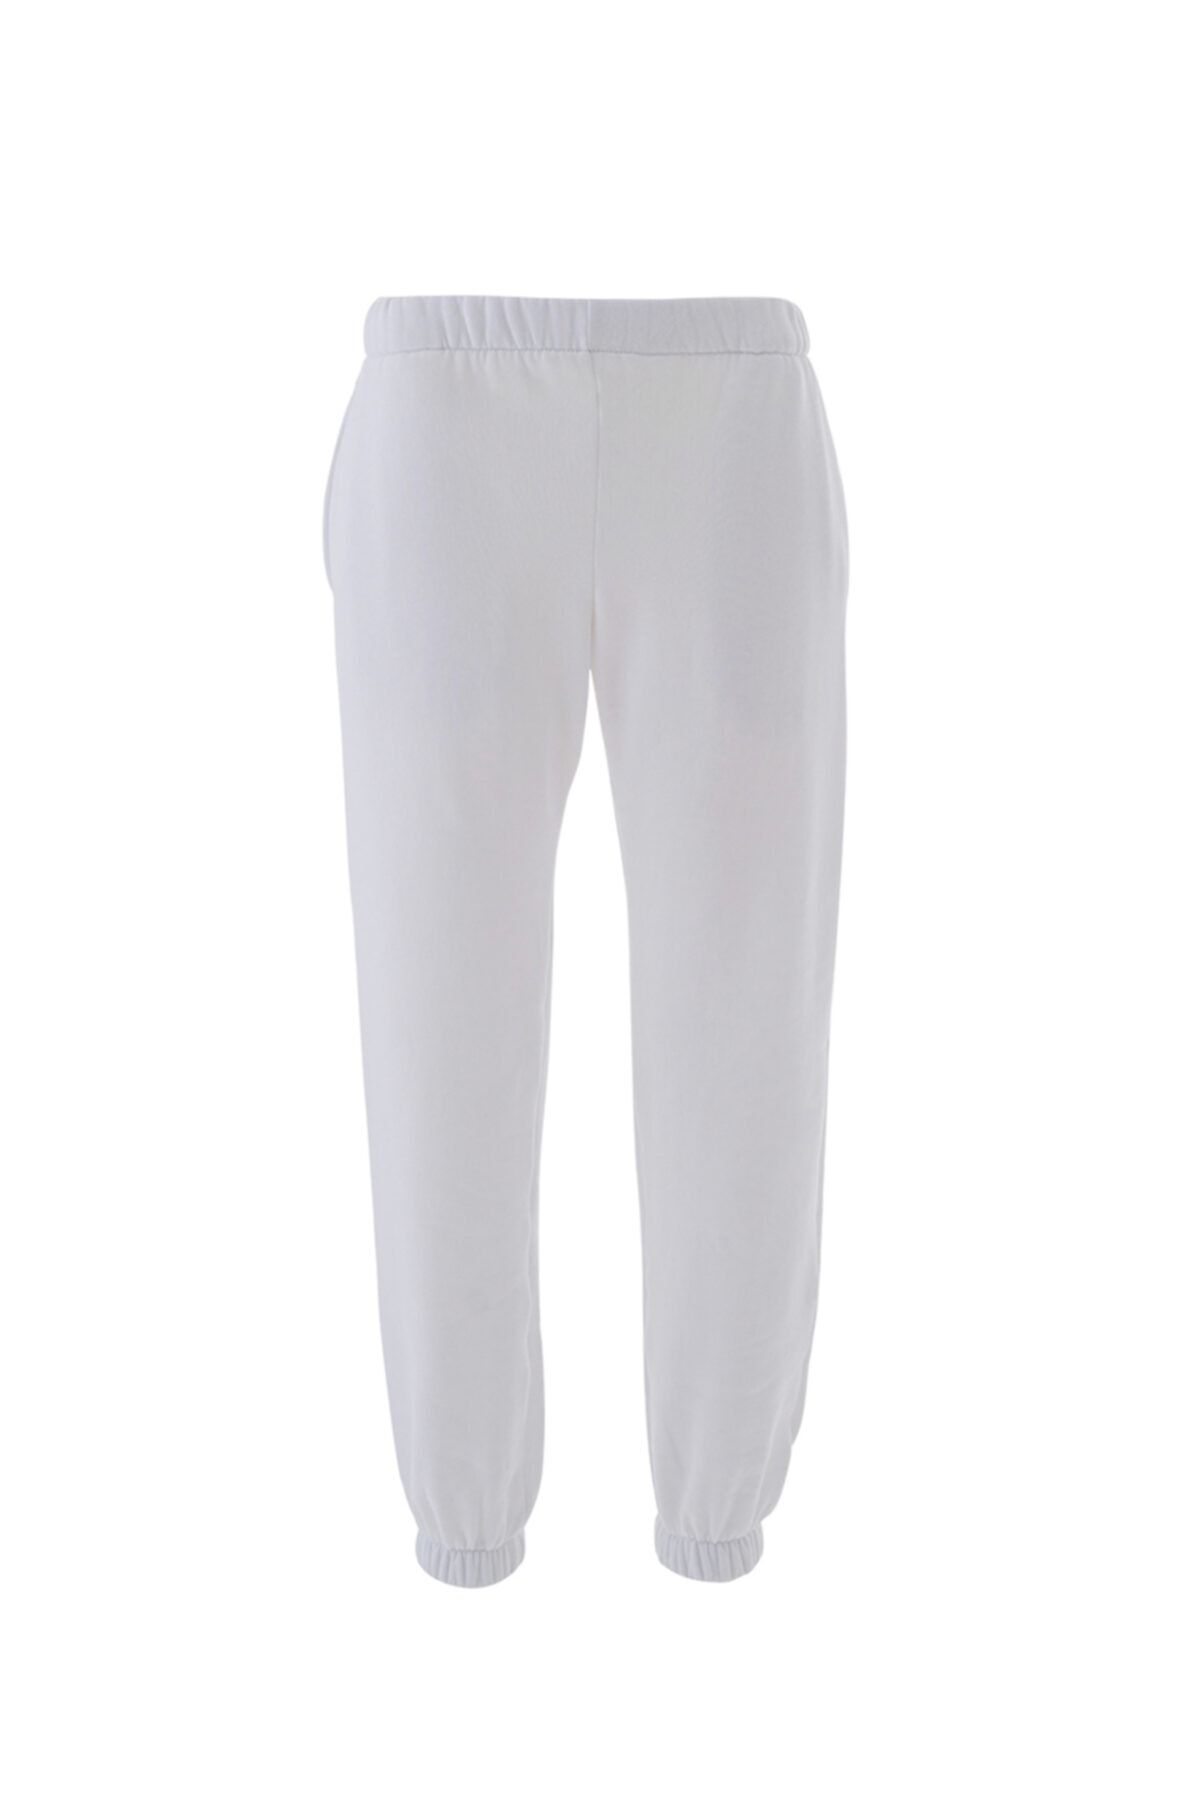 Arzu Sabancı Activewear Sunset Pantolon (polarlı)